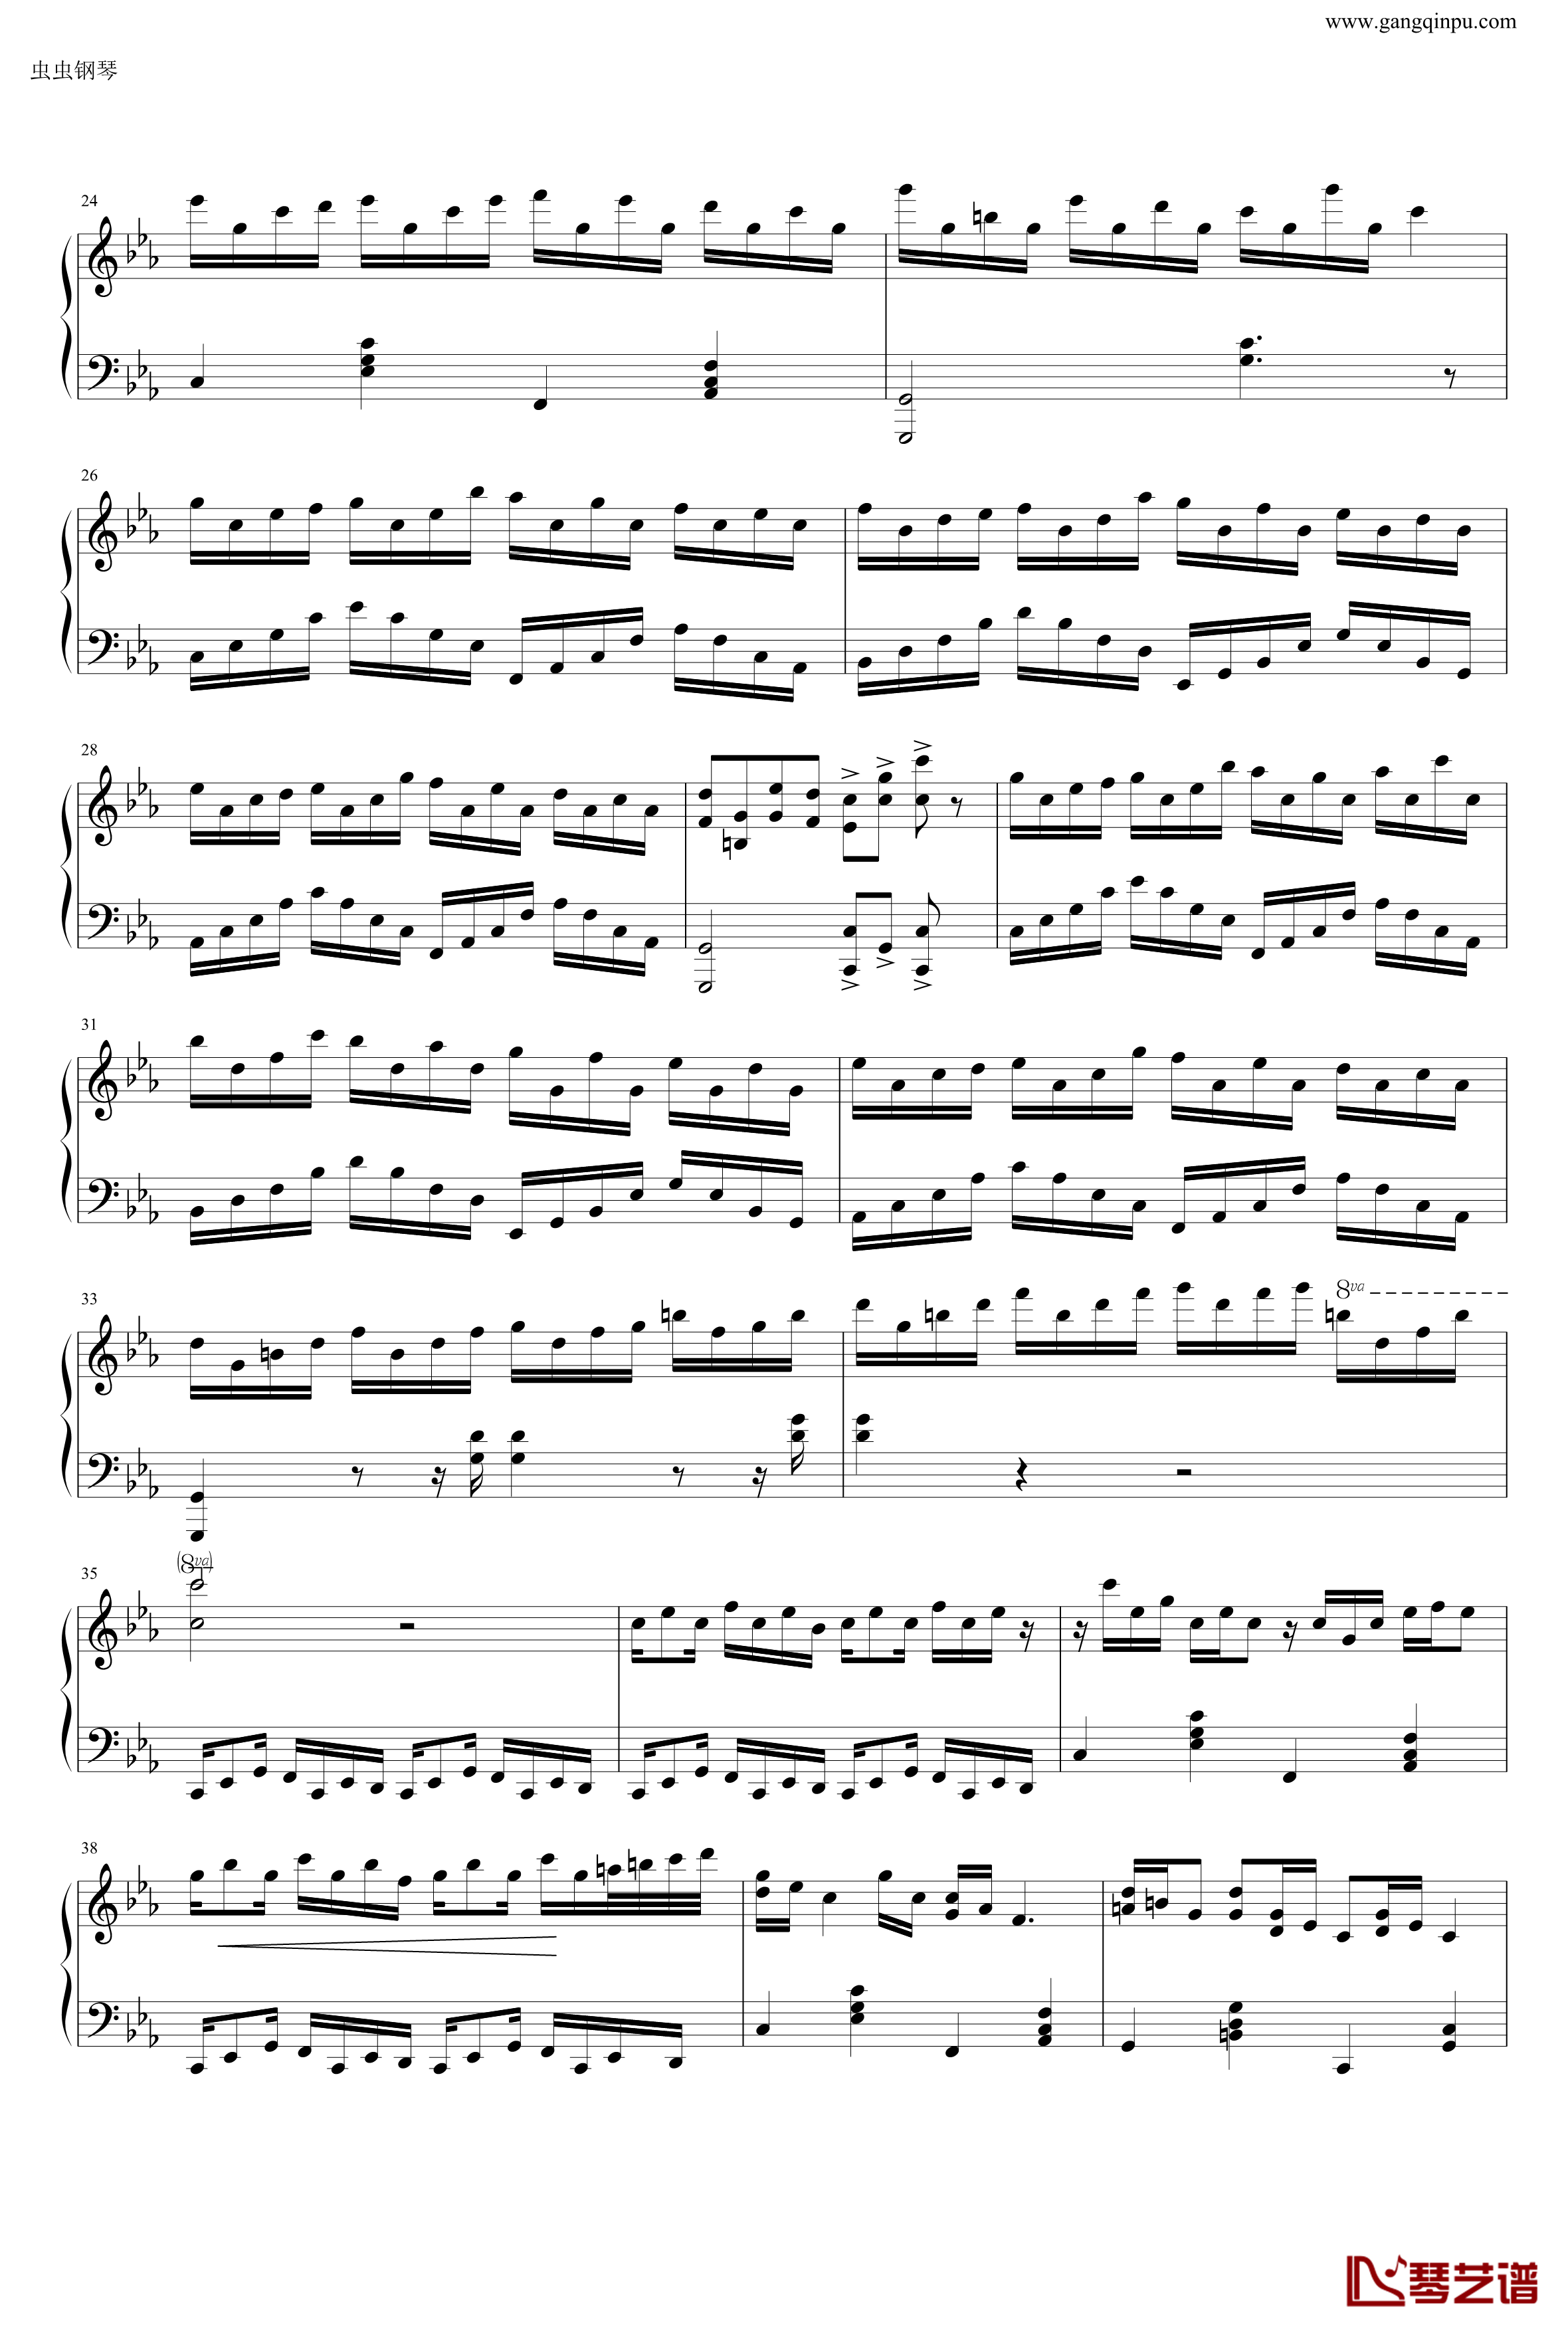 克罗地亚狂想曲钢琴谱-做了优化的纯正版-马克西姆-Maksim·Mrvica2